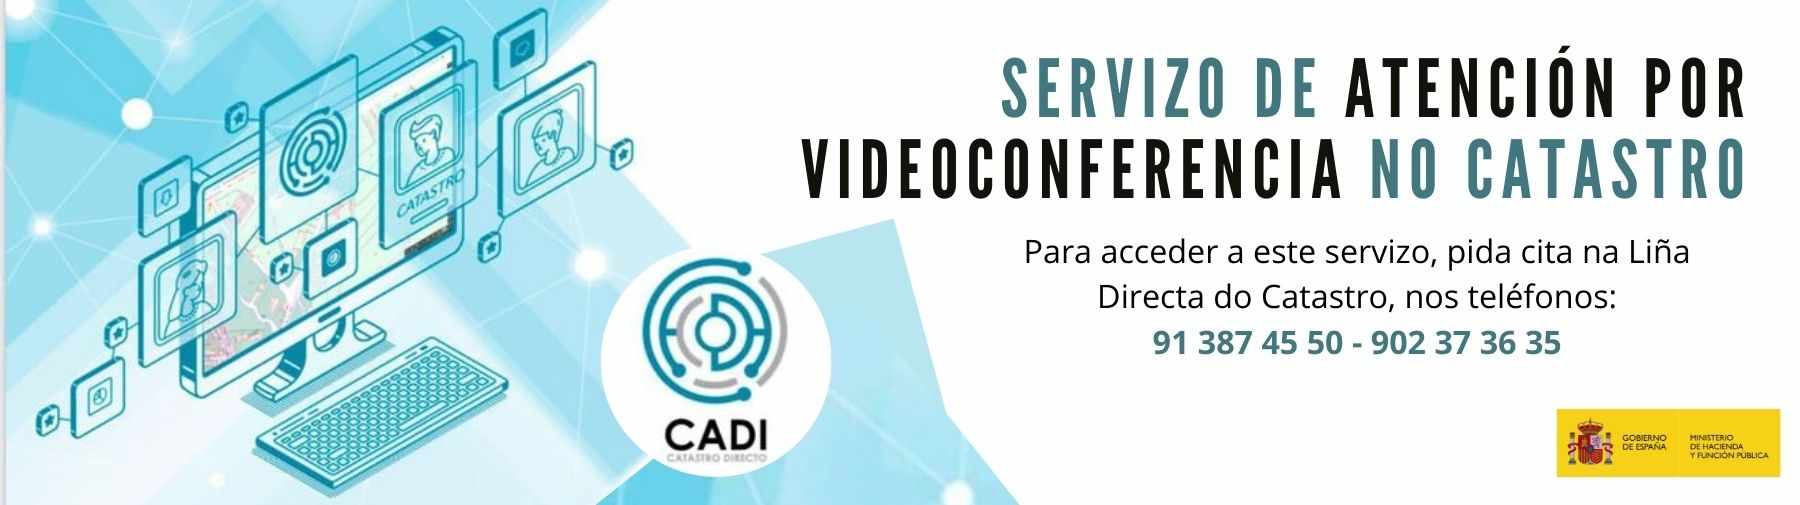 Servizo de atención por videoconferencia: Catastro Directo (CADI)